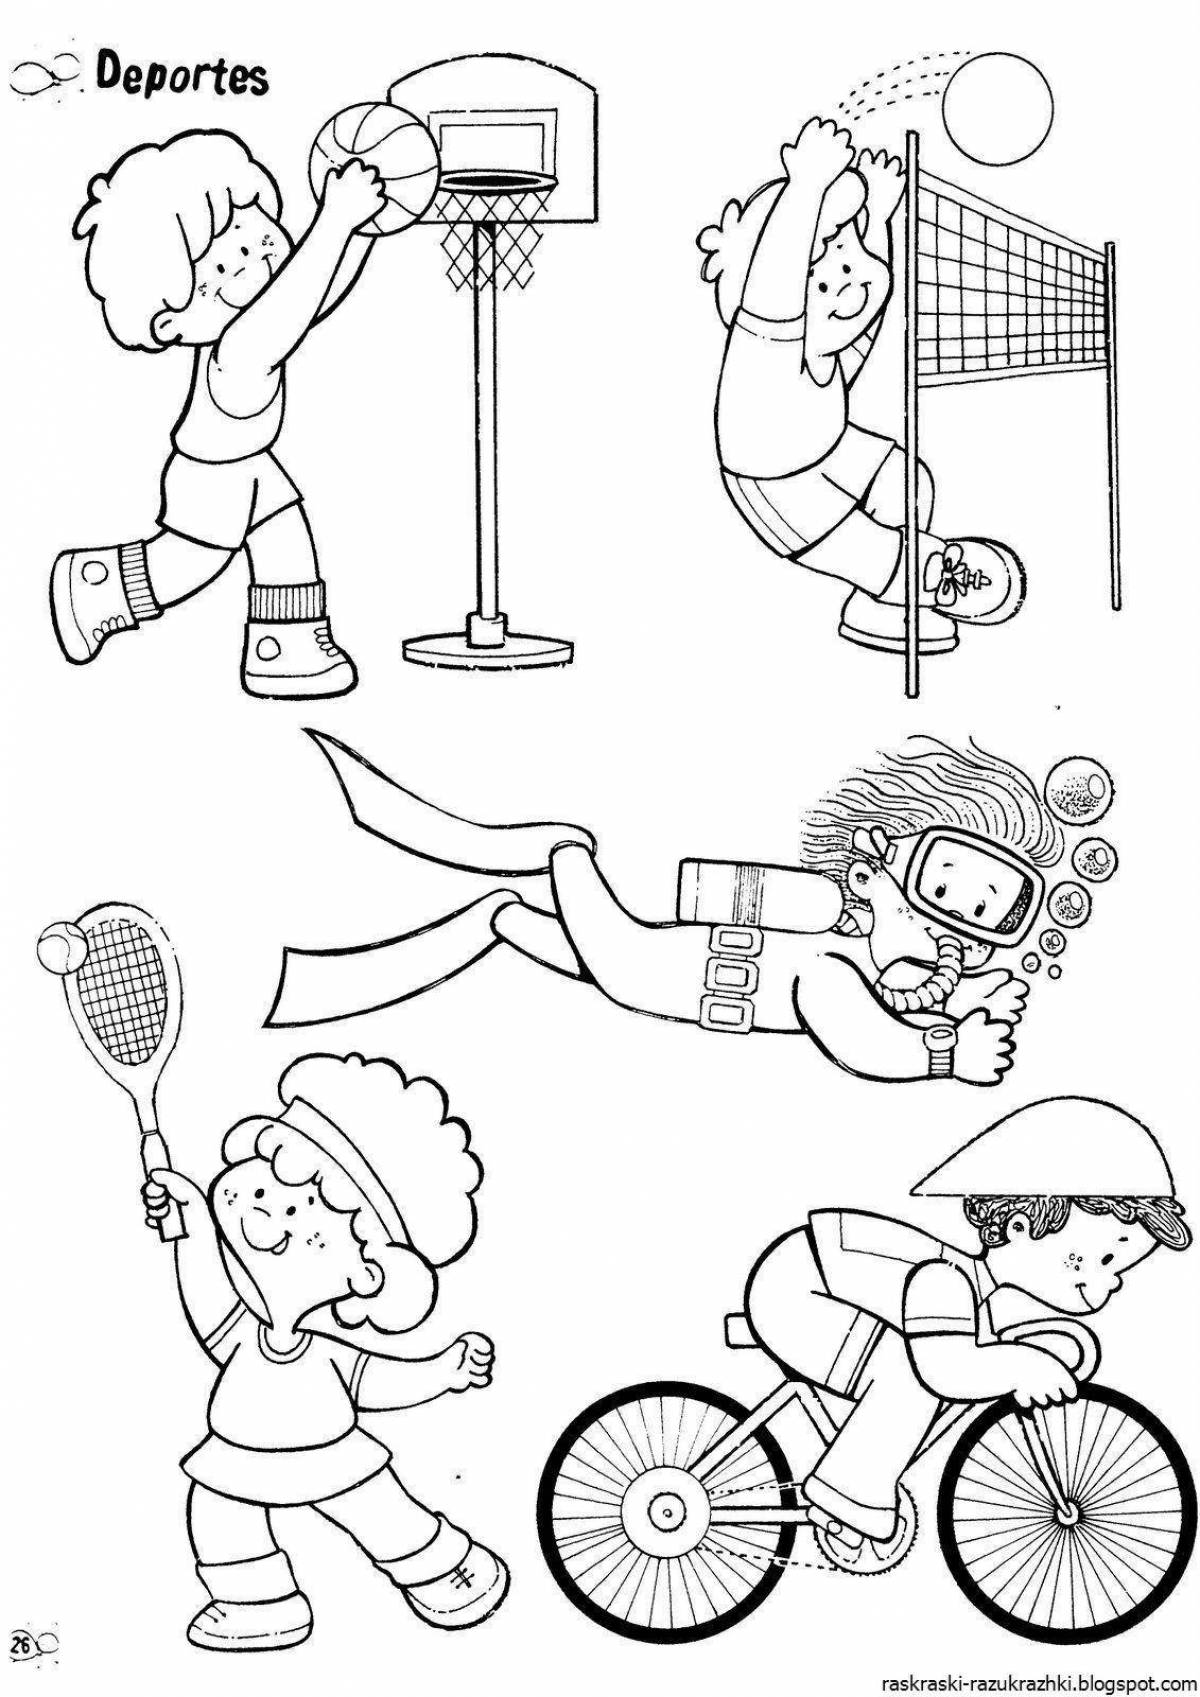 Развлекательная спортивная раскраска для детей 4-5 лет